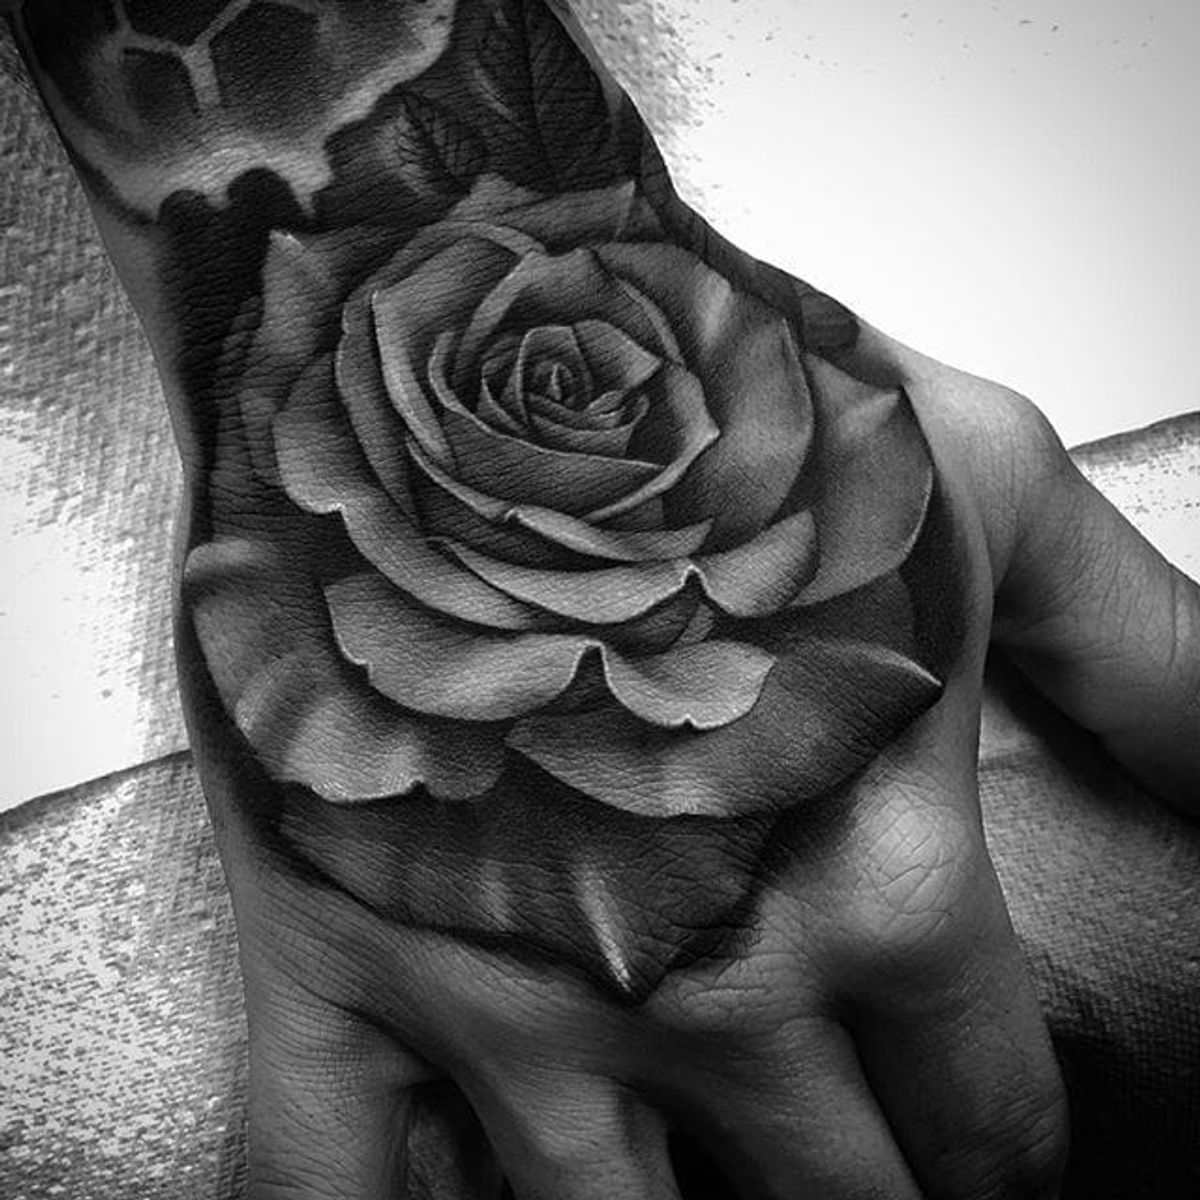 Beautiful Black and Gray Rose and Skull Tattoos by Bobby Loveridge •  Tattoodo